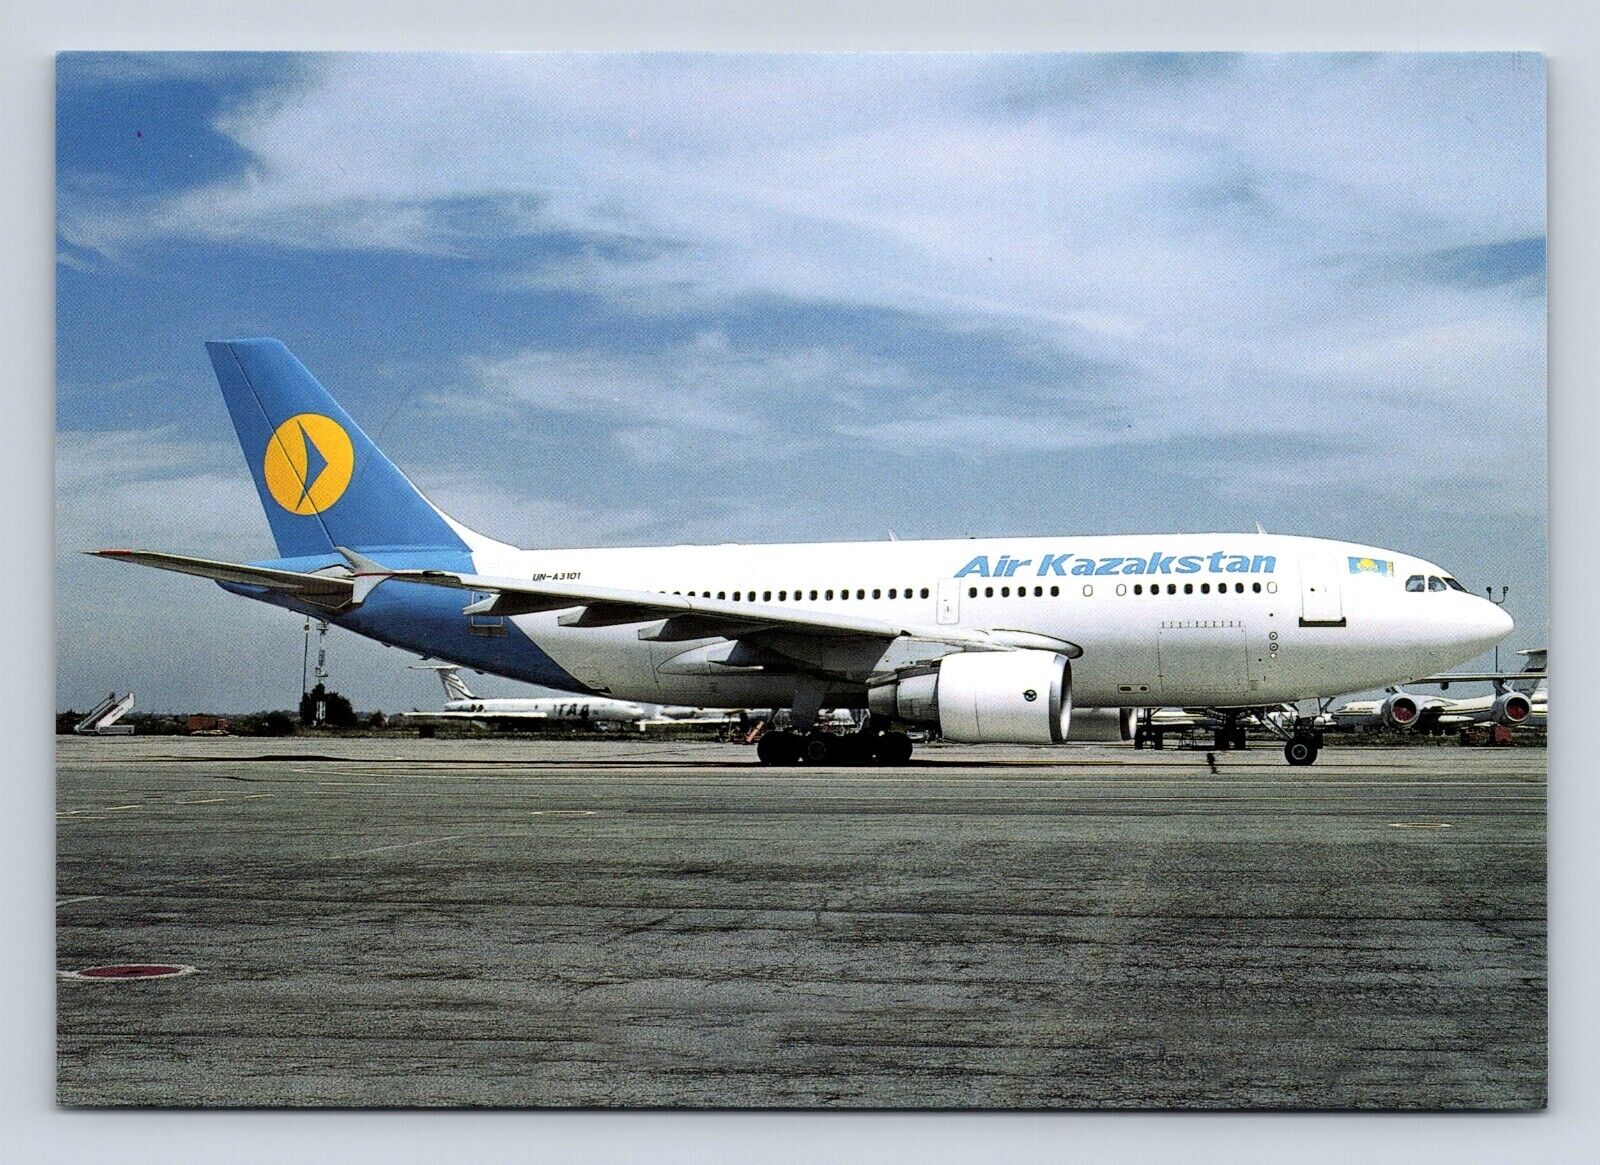 Air Kazakstan Airbus A-310-300 UN-A3101 1999 Airplane Airlines Postcard Vtg A5